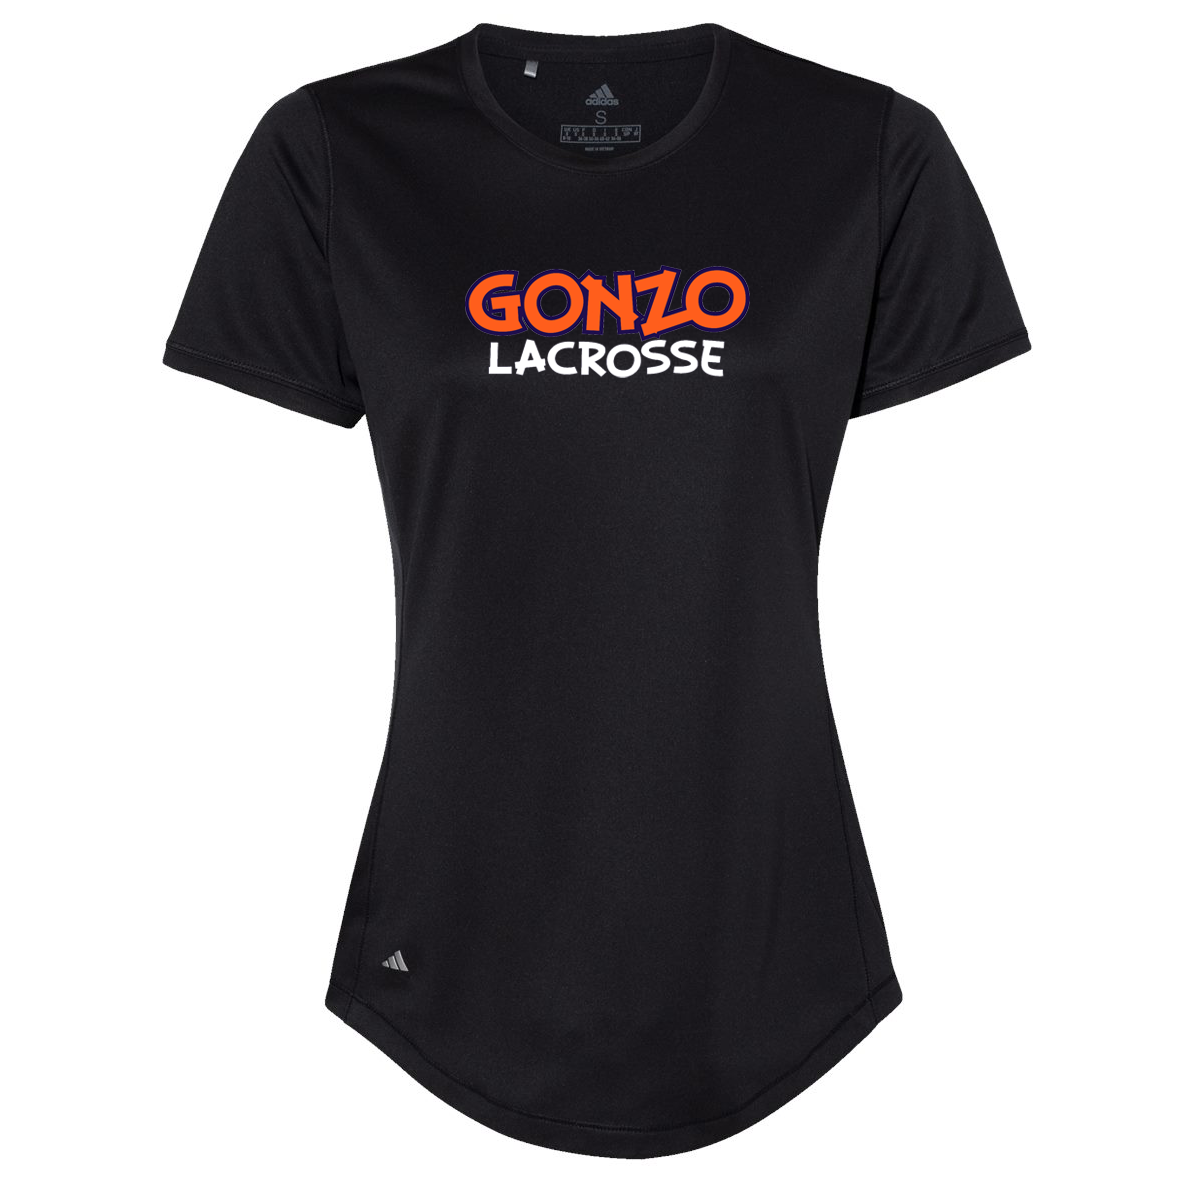 Gonzo Lacrosse Women's Adidas Sport T-Shirt